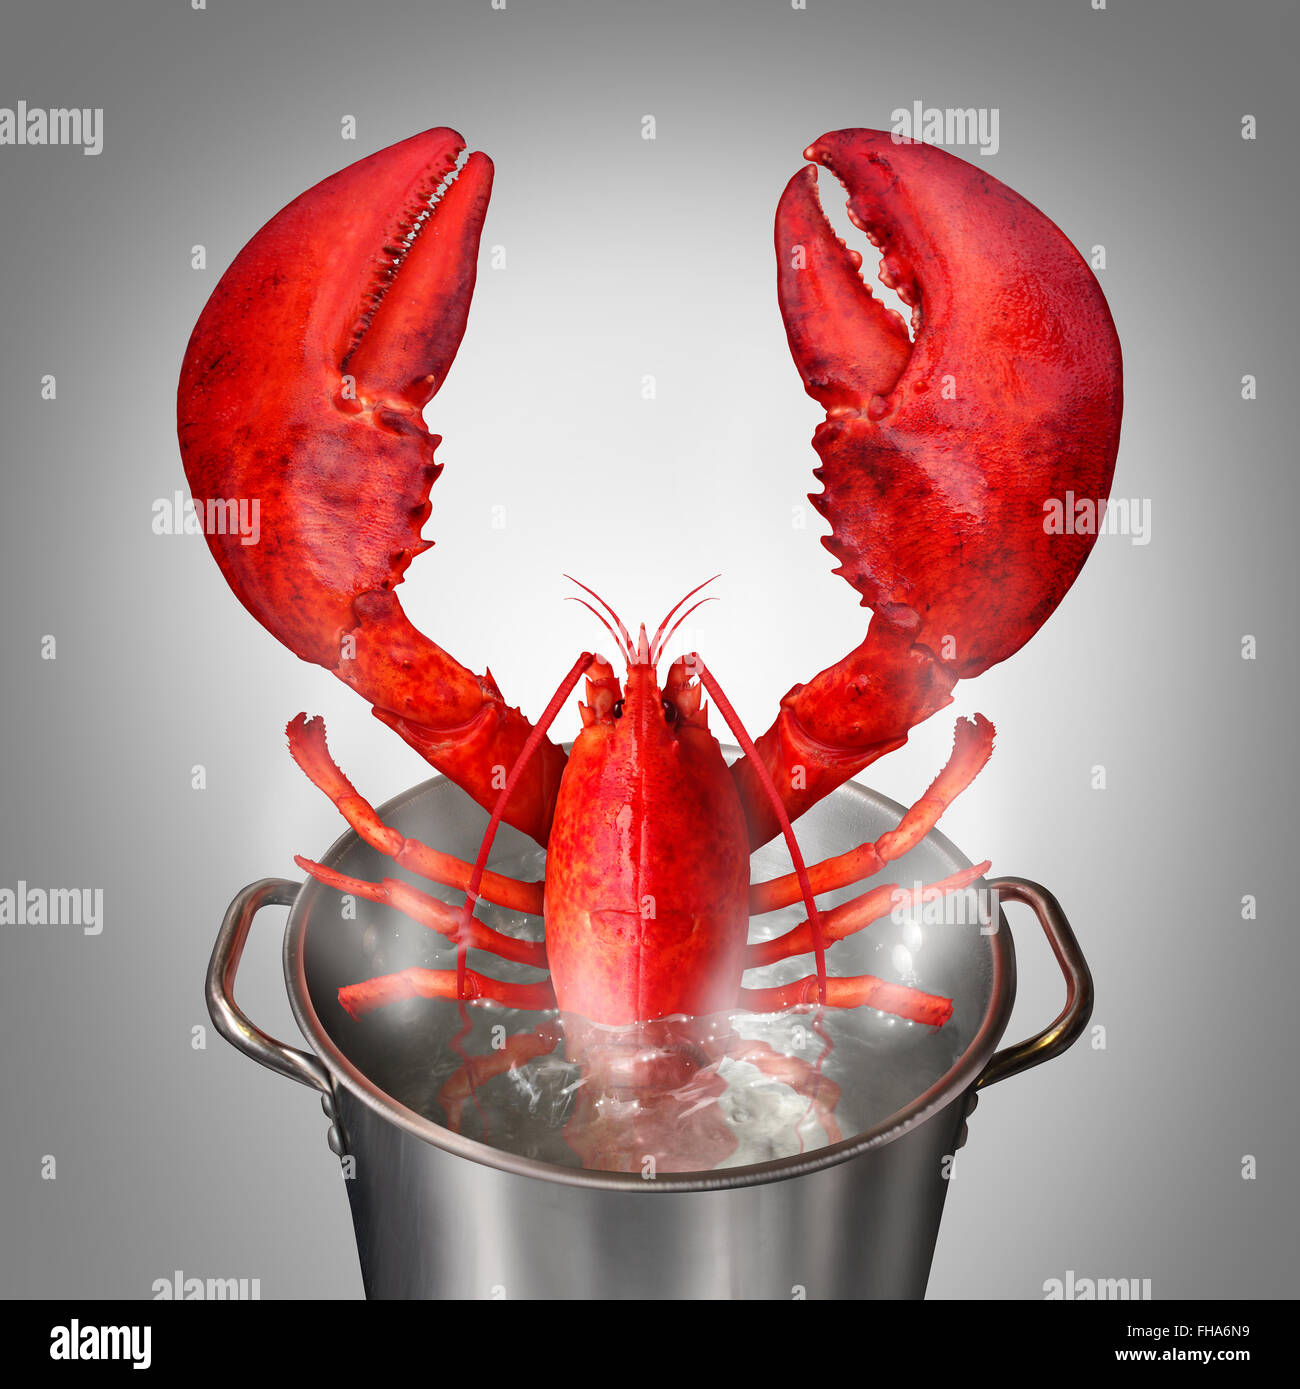 Le homard dans un pot comme un poisson frais du jour petit crustacé de couleur rouge qui sort d'une cuisine électrique avec de l'eau bouillante comme un symbole de fruits de mer et des plats raffinés les repas pris au restaurant. Banque D'Images